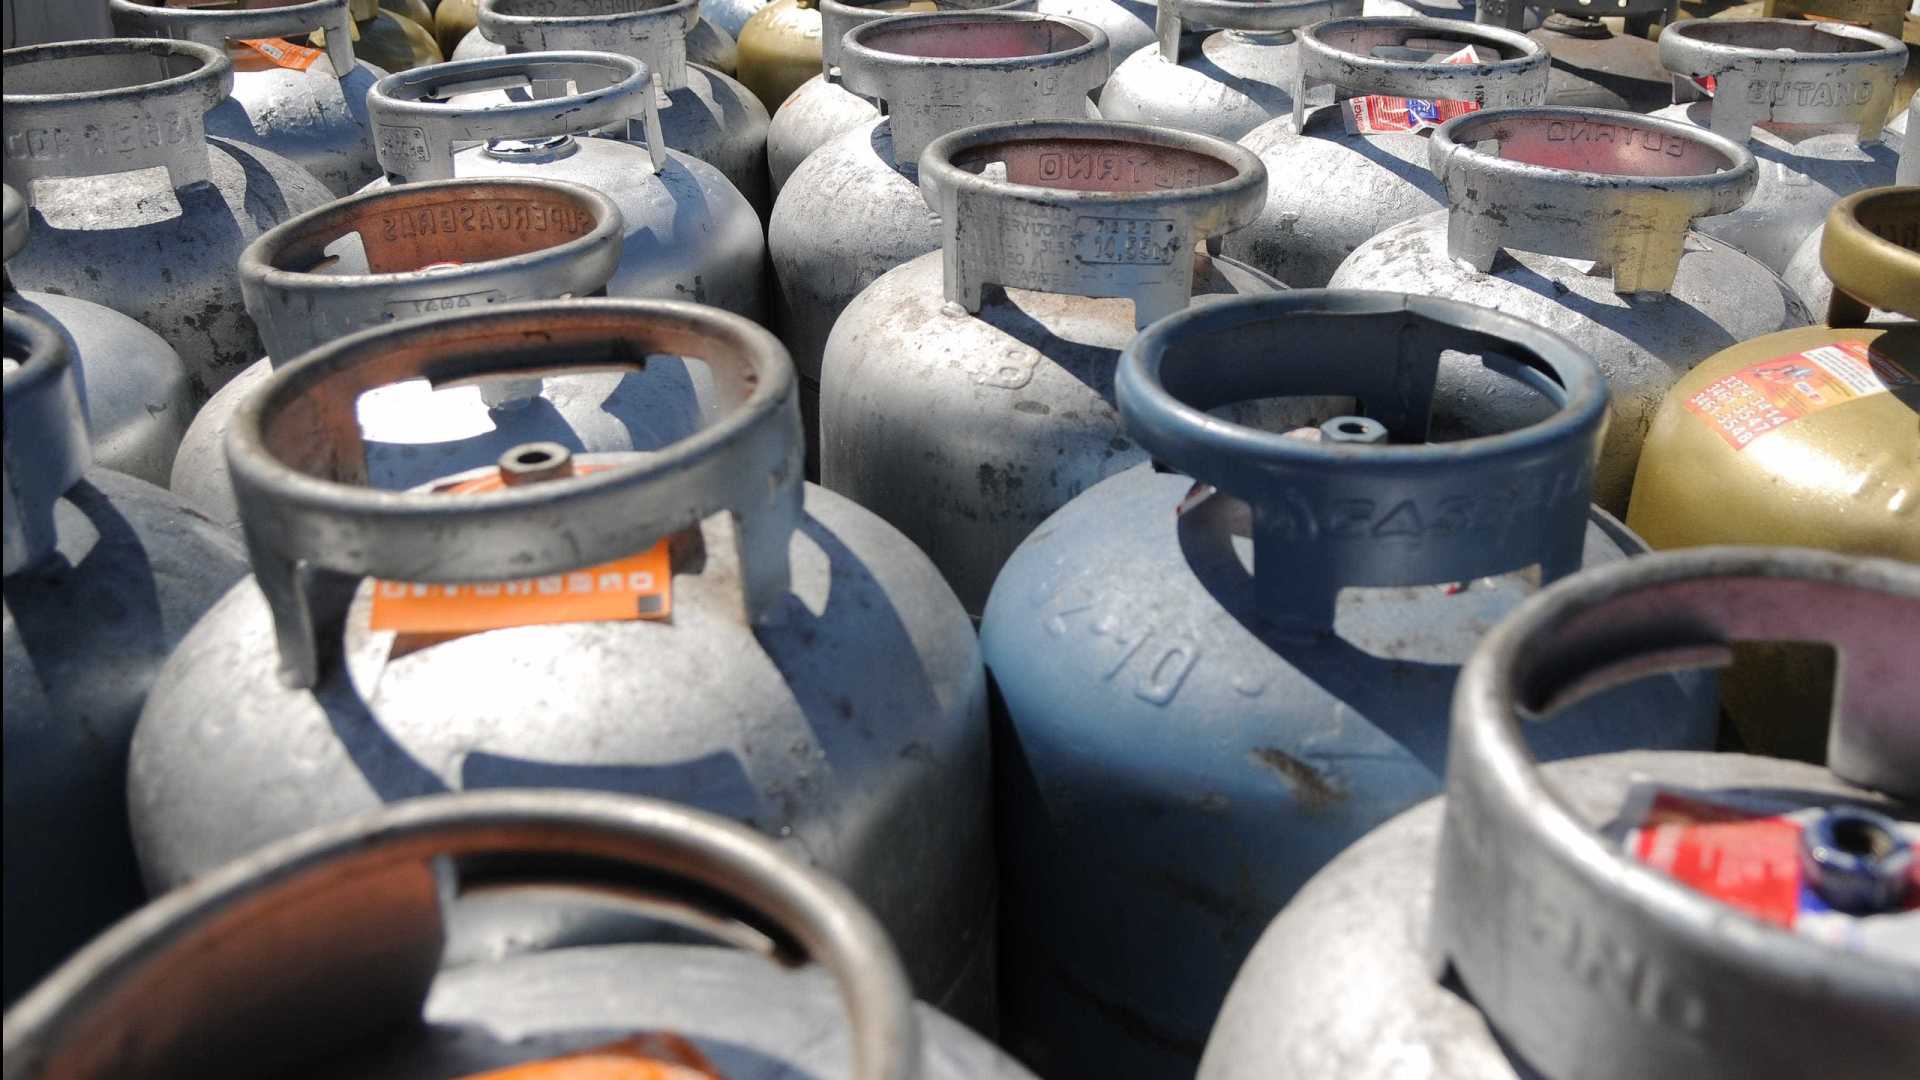 Revendas de botijão de gás estão sem produto, diz sindicato